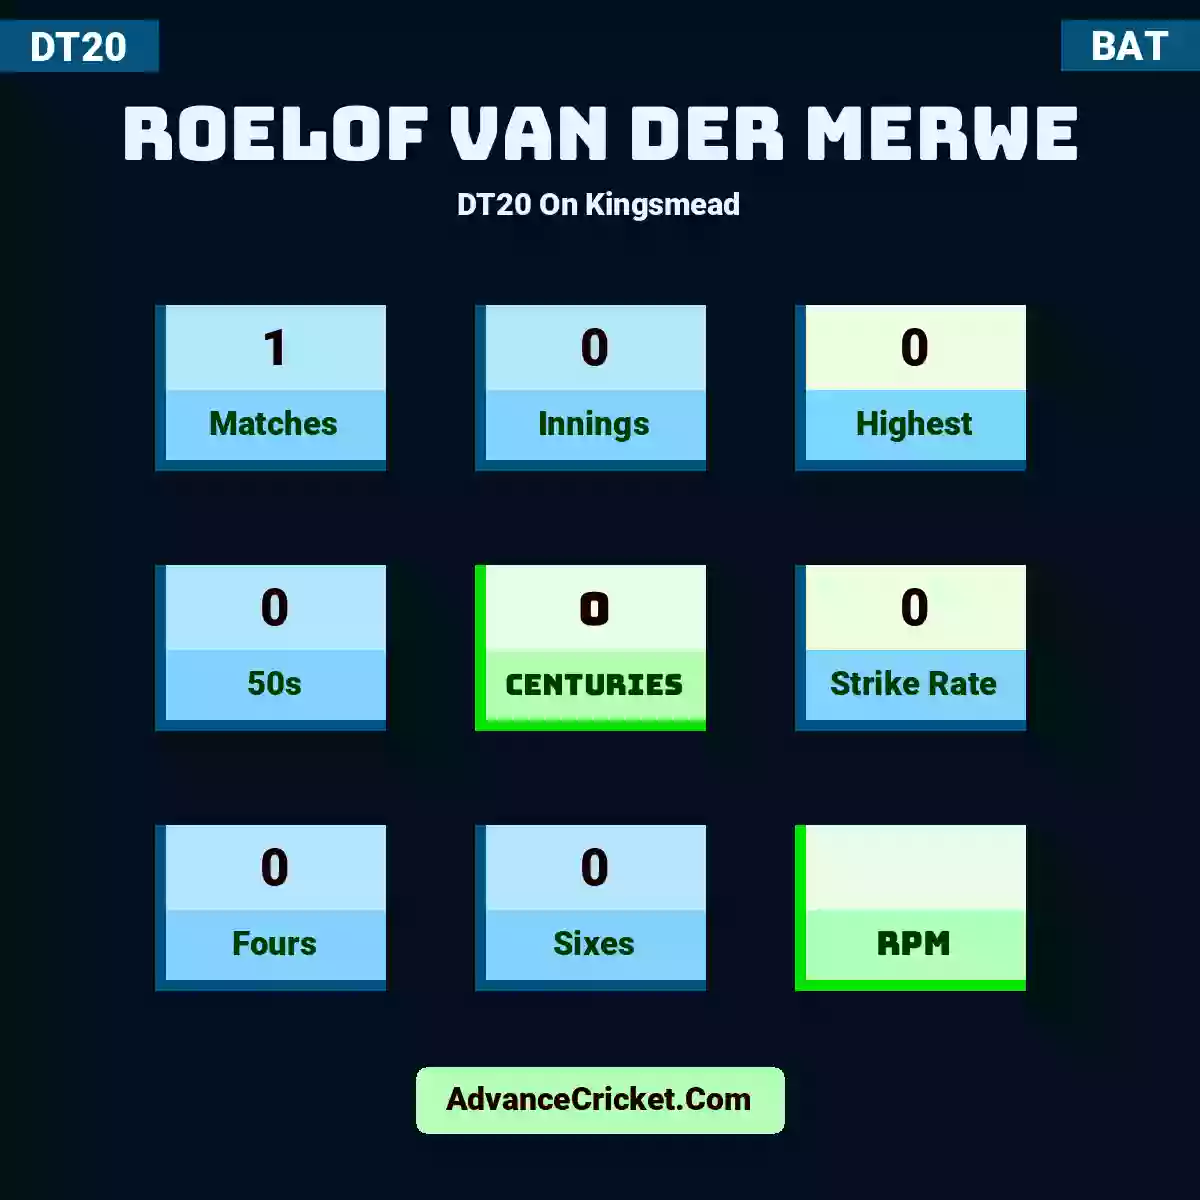 Roelof van der Merwe DT20  On Kingsmead, Roelof van der Merwe played 1 matches, scored 0 runs as highest, 0 half-centuries, and 0 centuries, with a strike rate of 0. R.Merwe hit 0 fours and 0 sixes.